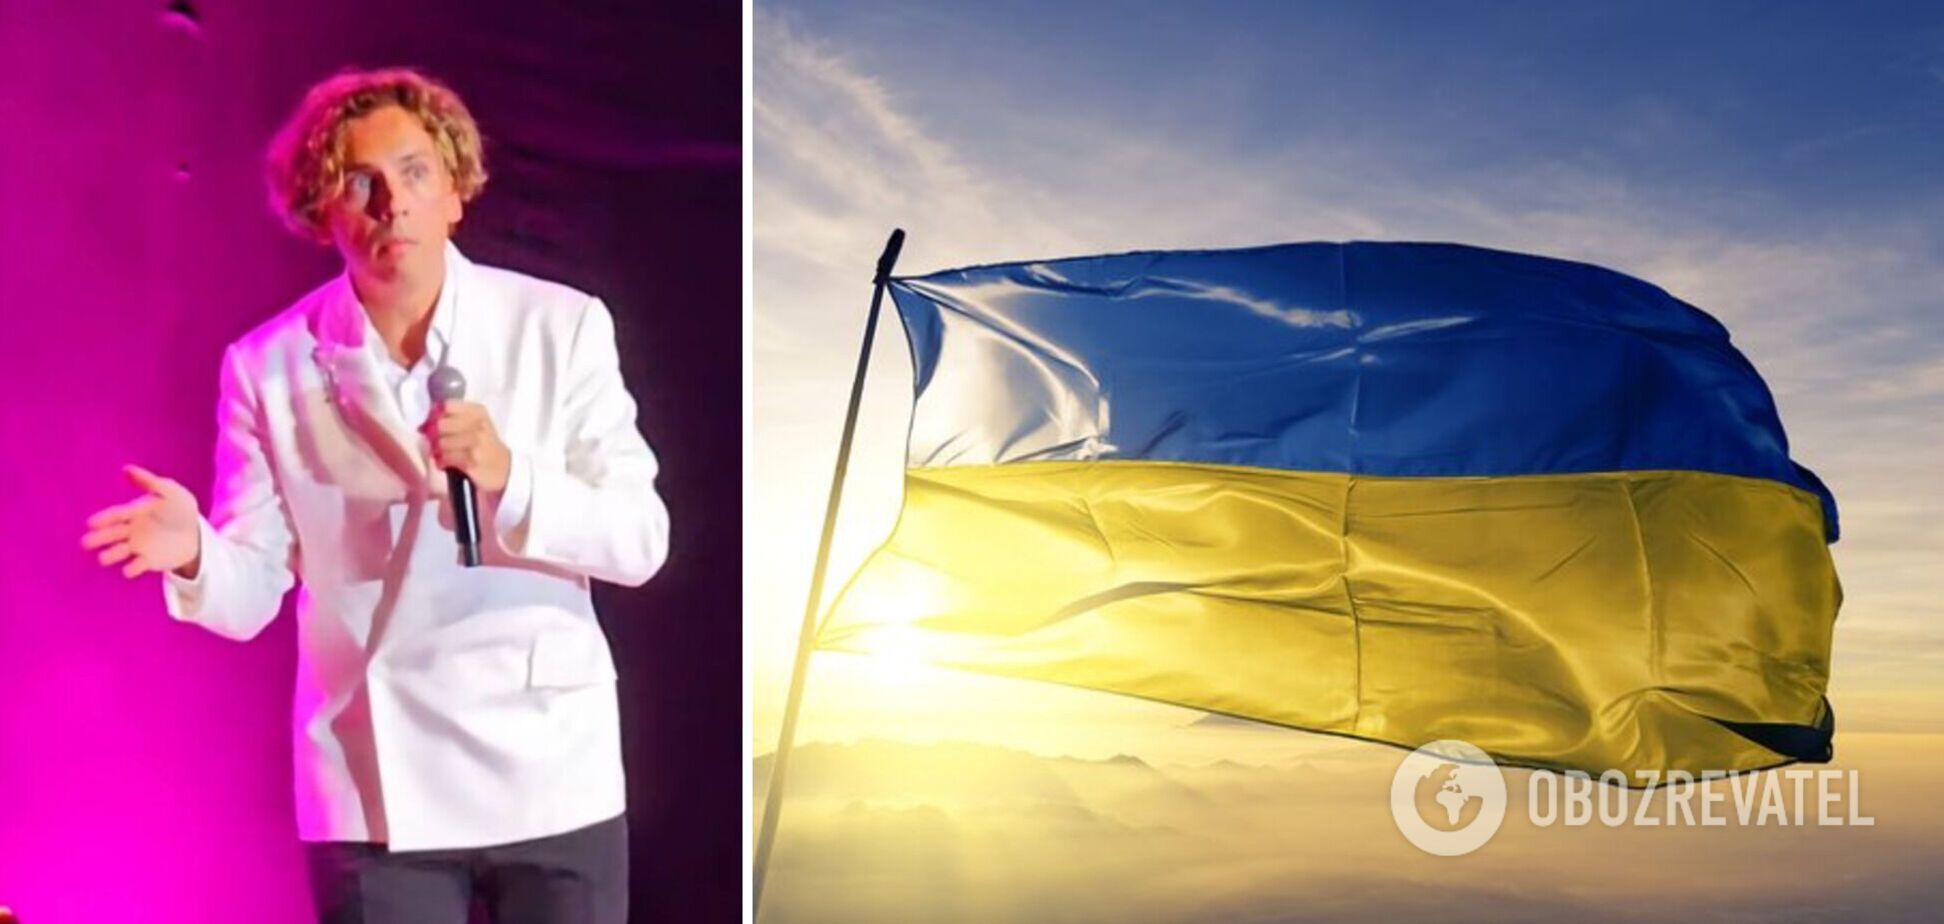 Галкин довел до истерики россиян: признал, что поддерживает Украину, и спел 'Піду втоплюся' на украинском языке. Видео